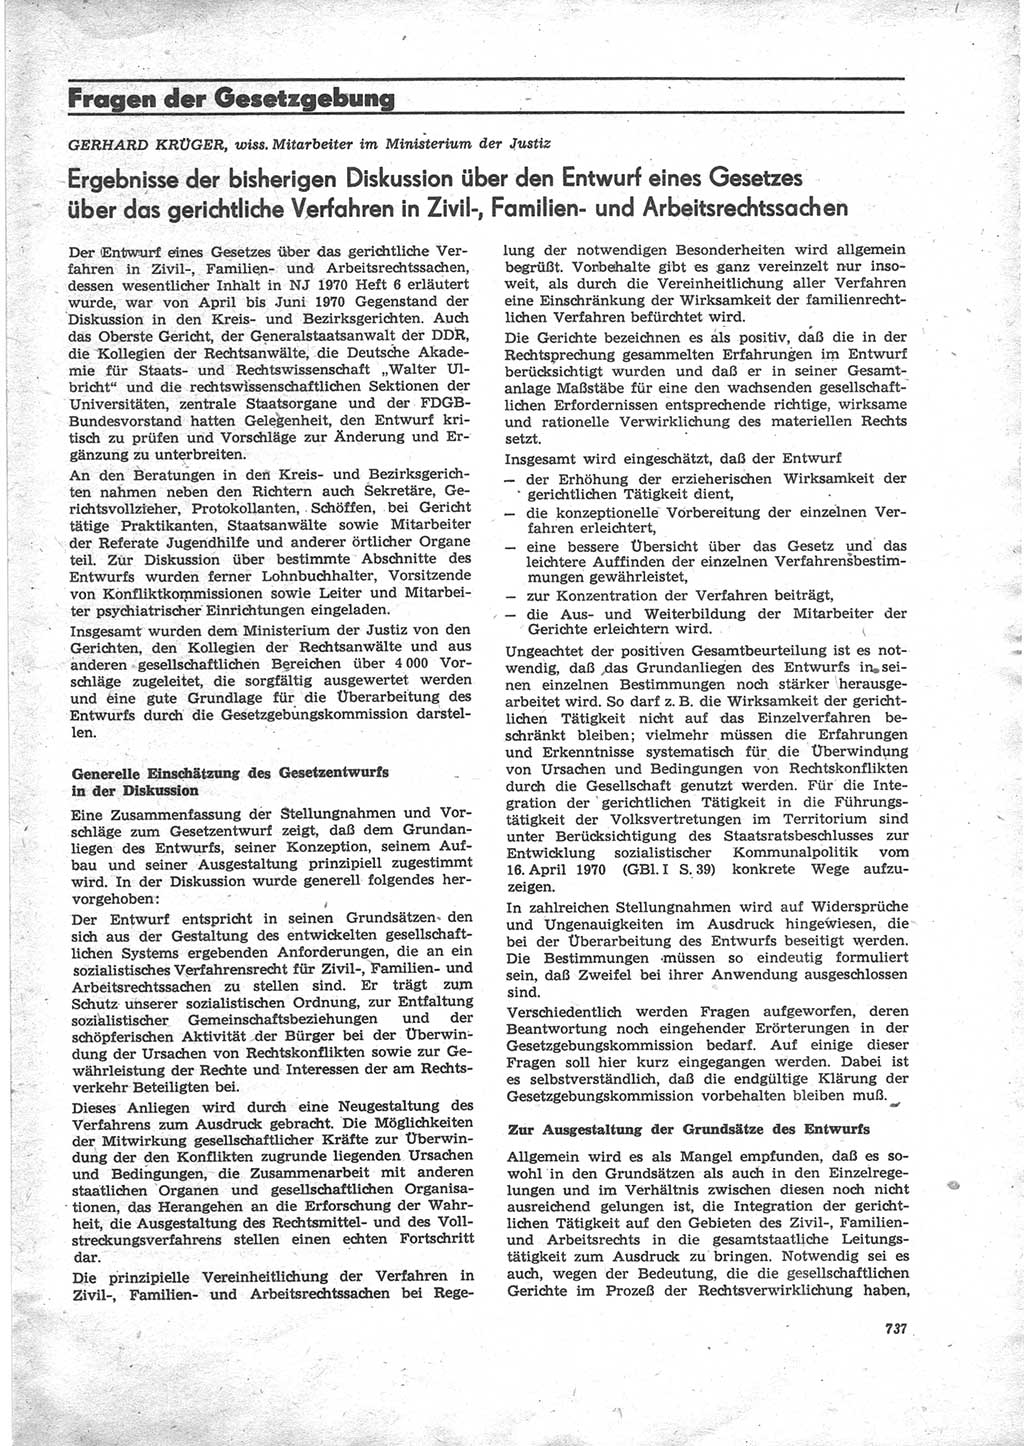 Neue Justiz (NJ), Zeitschrift für Recht und Rechtswissenschaft [Deutsche Demokratische Republik (DDR)], 24. Jahrgang 1970, Seite 737 (NJ DDR 1970, S. 737)